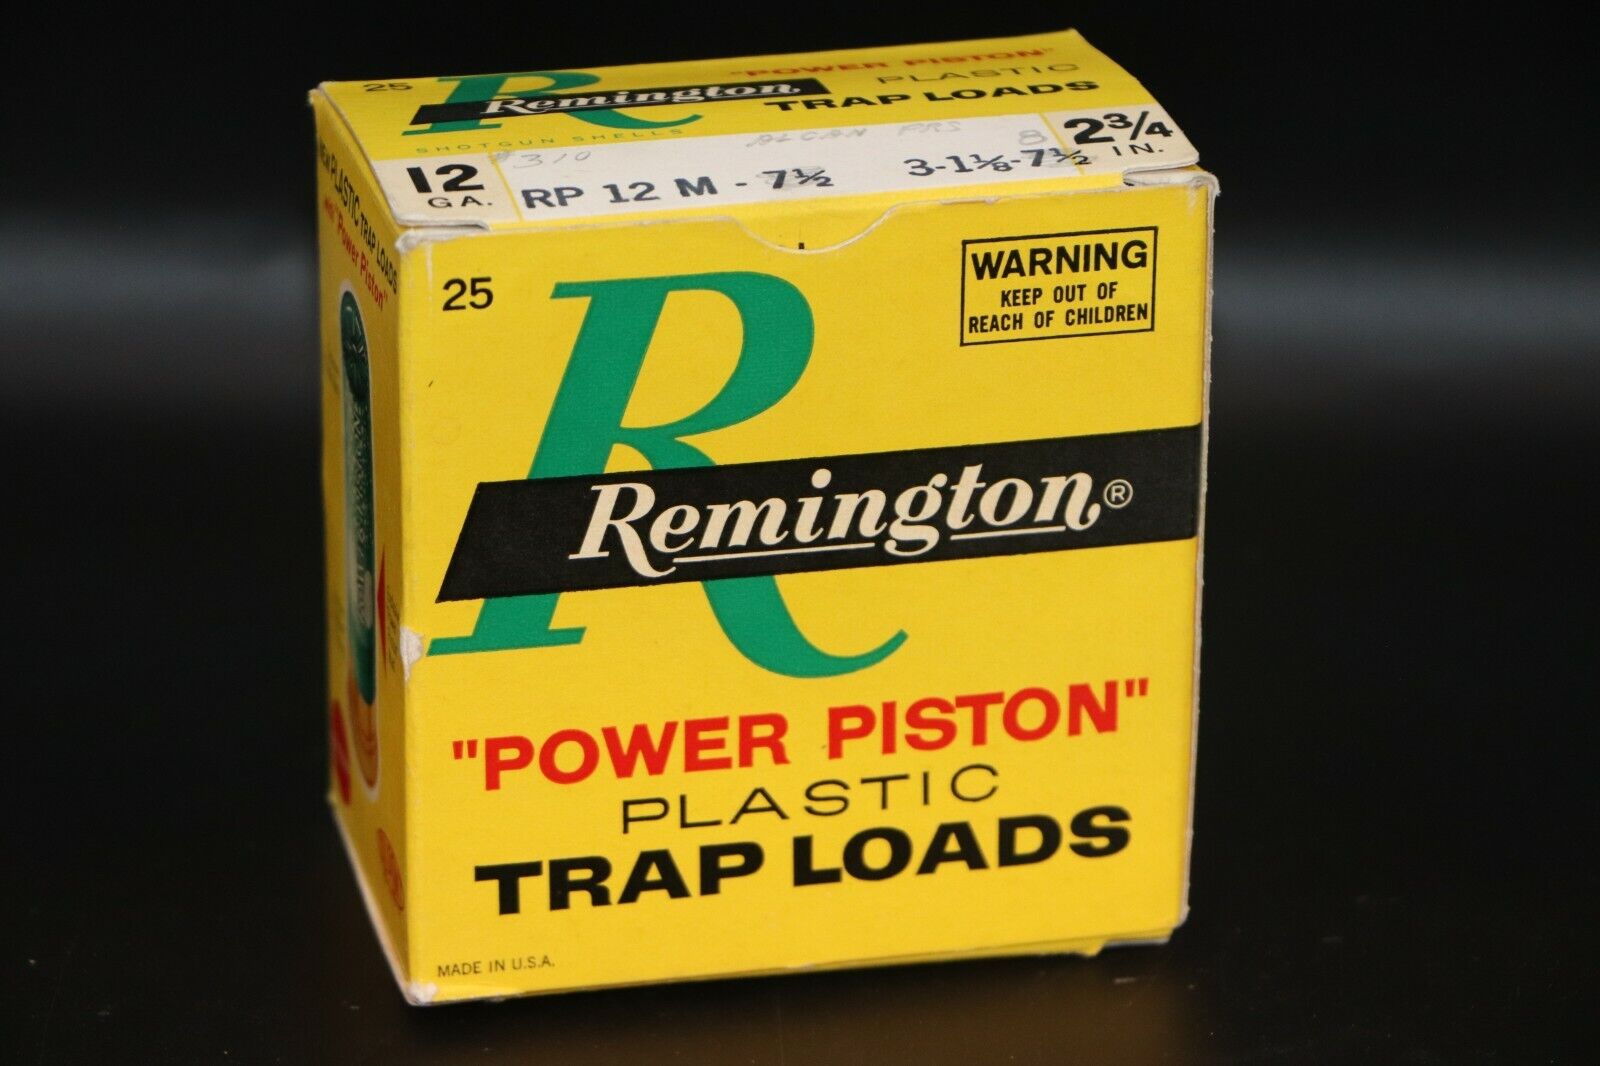 Remington Power Piston Trap Loads 12 Gauge Shotgun Shell Box - Empty